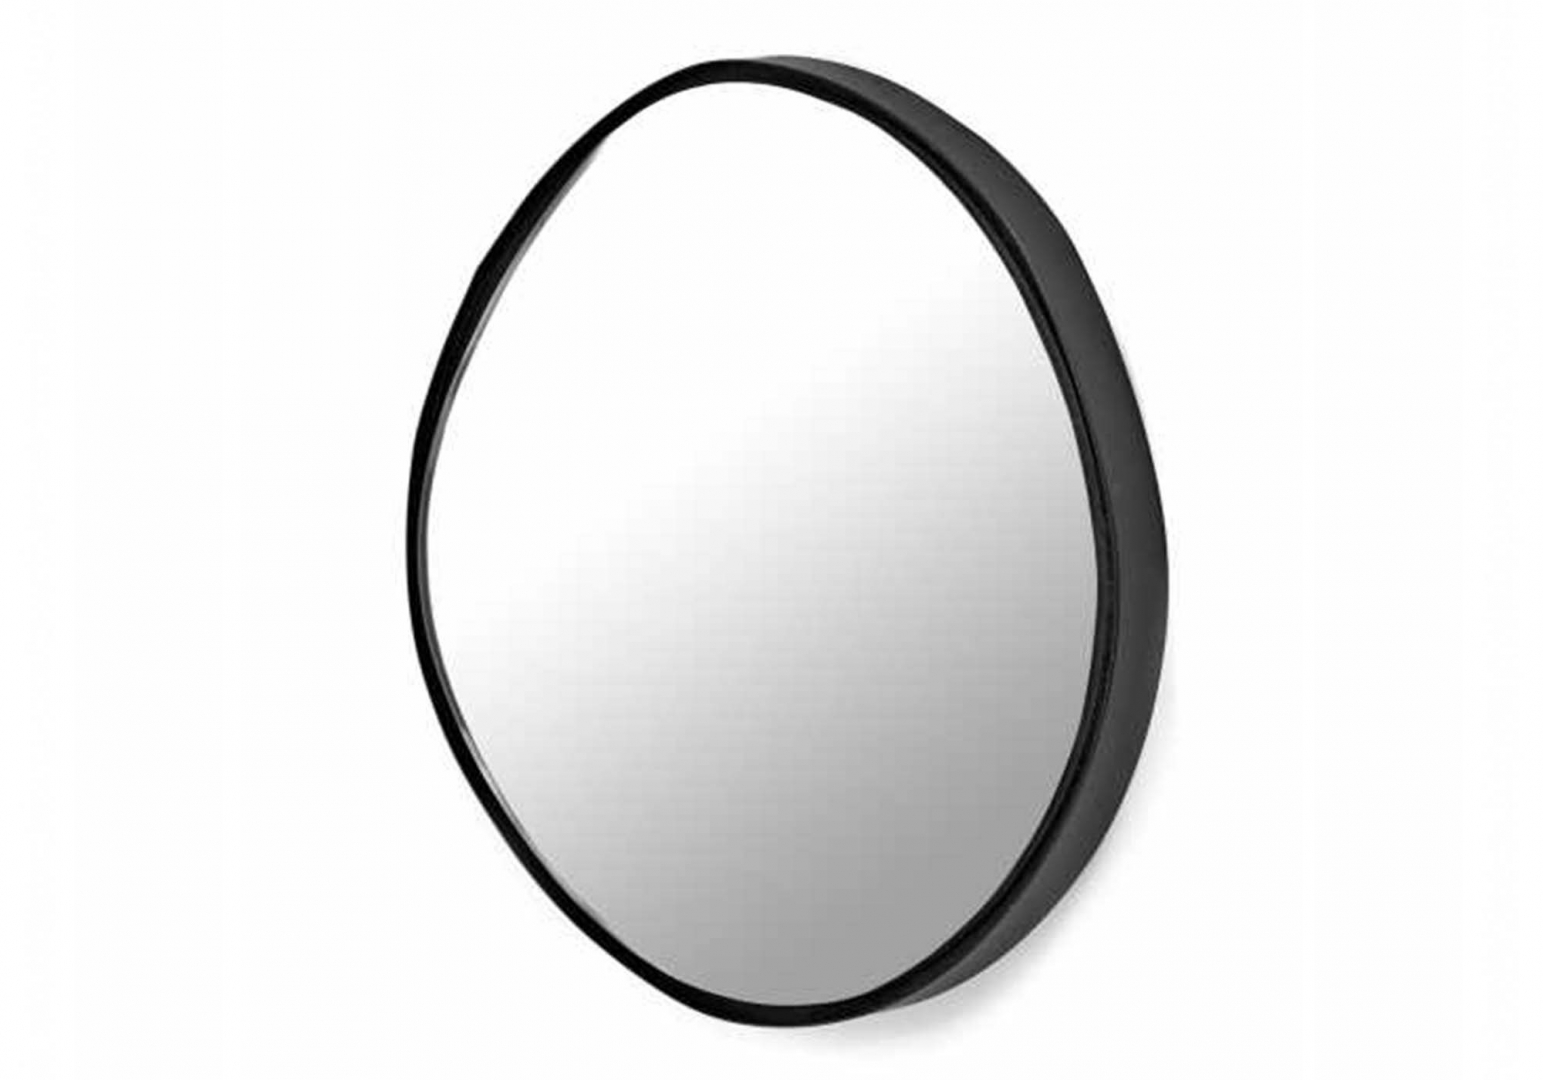 Miroir A noir design - SERAX